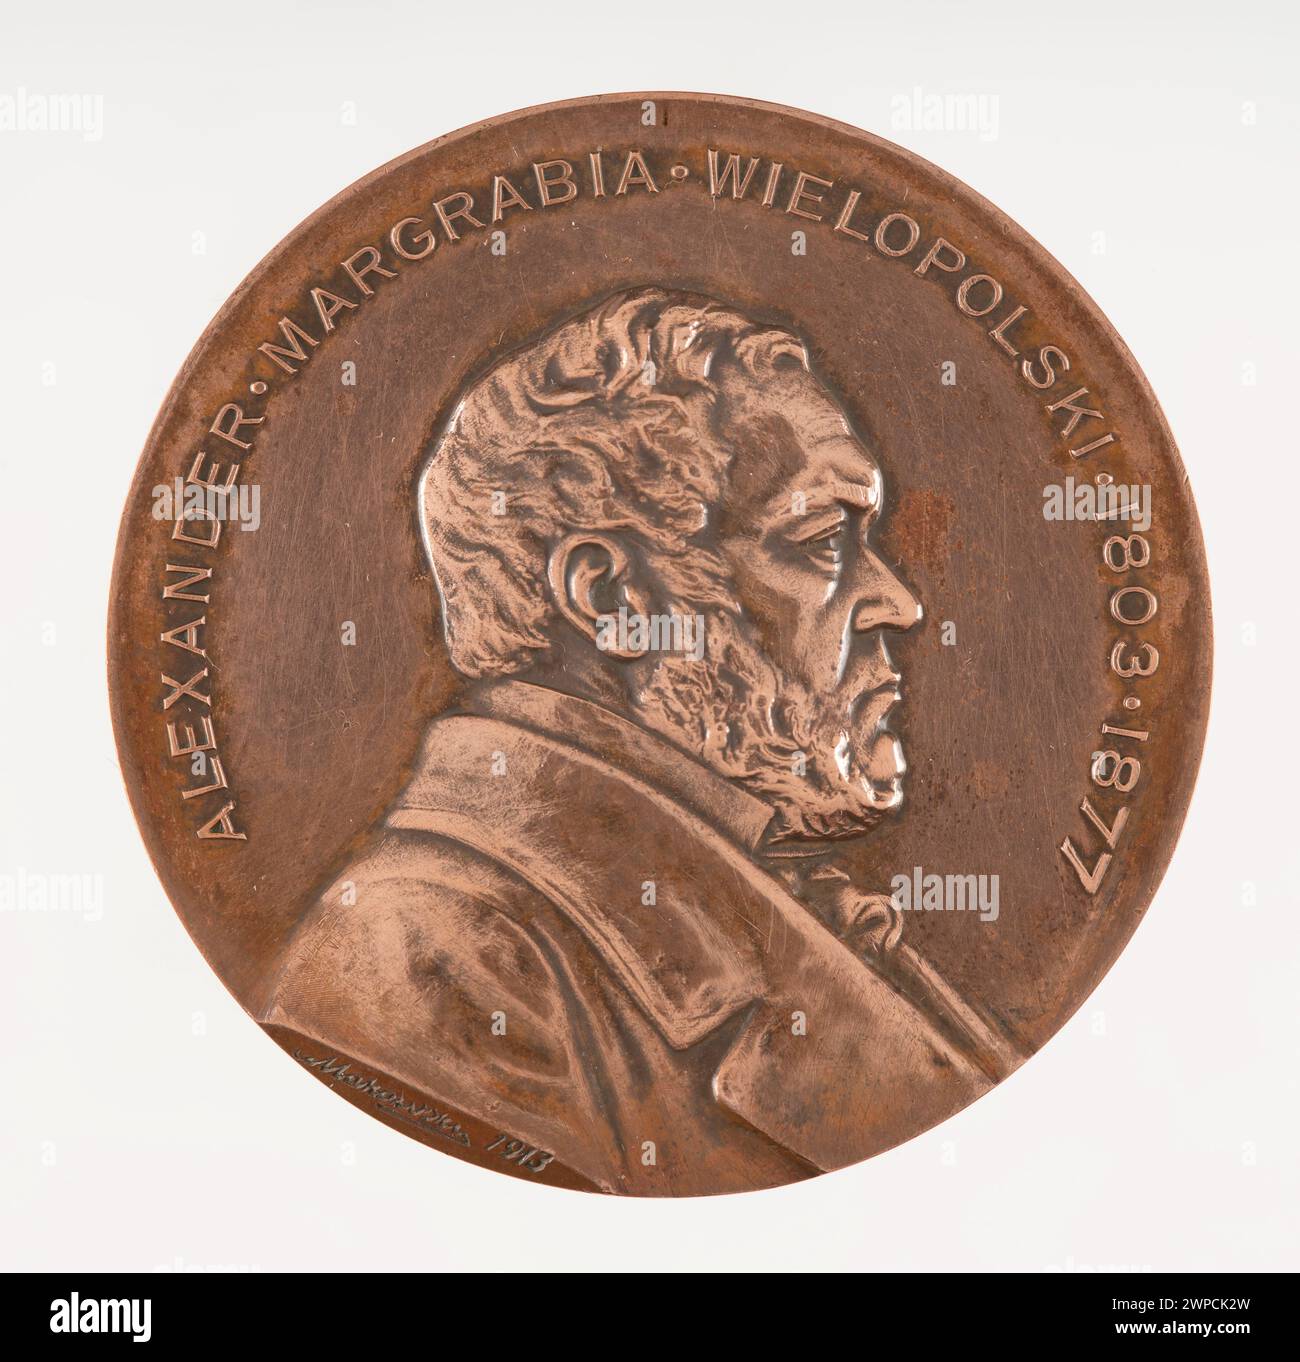 Medaille anlässlich des 50. Jahrestages der Reformen von Alexander Wielopolski (1803-1877); Makowski, Czes Aw (1873-1921), Chyli Ski, Józef (FL. 1903-1950); 1913 (1913-00-00-1913-00-00); Stockfoto